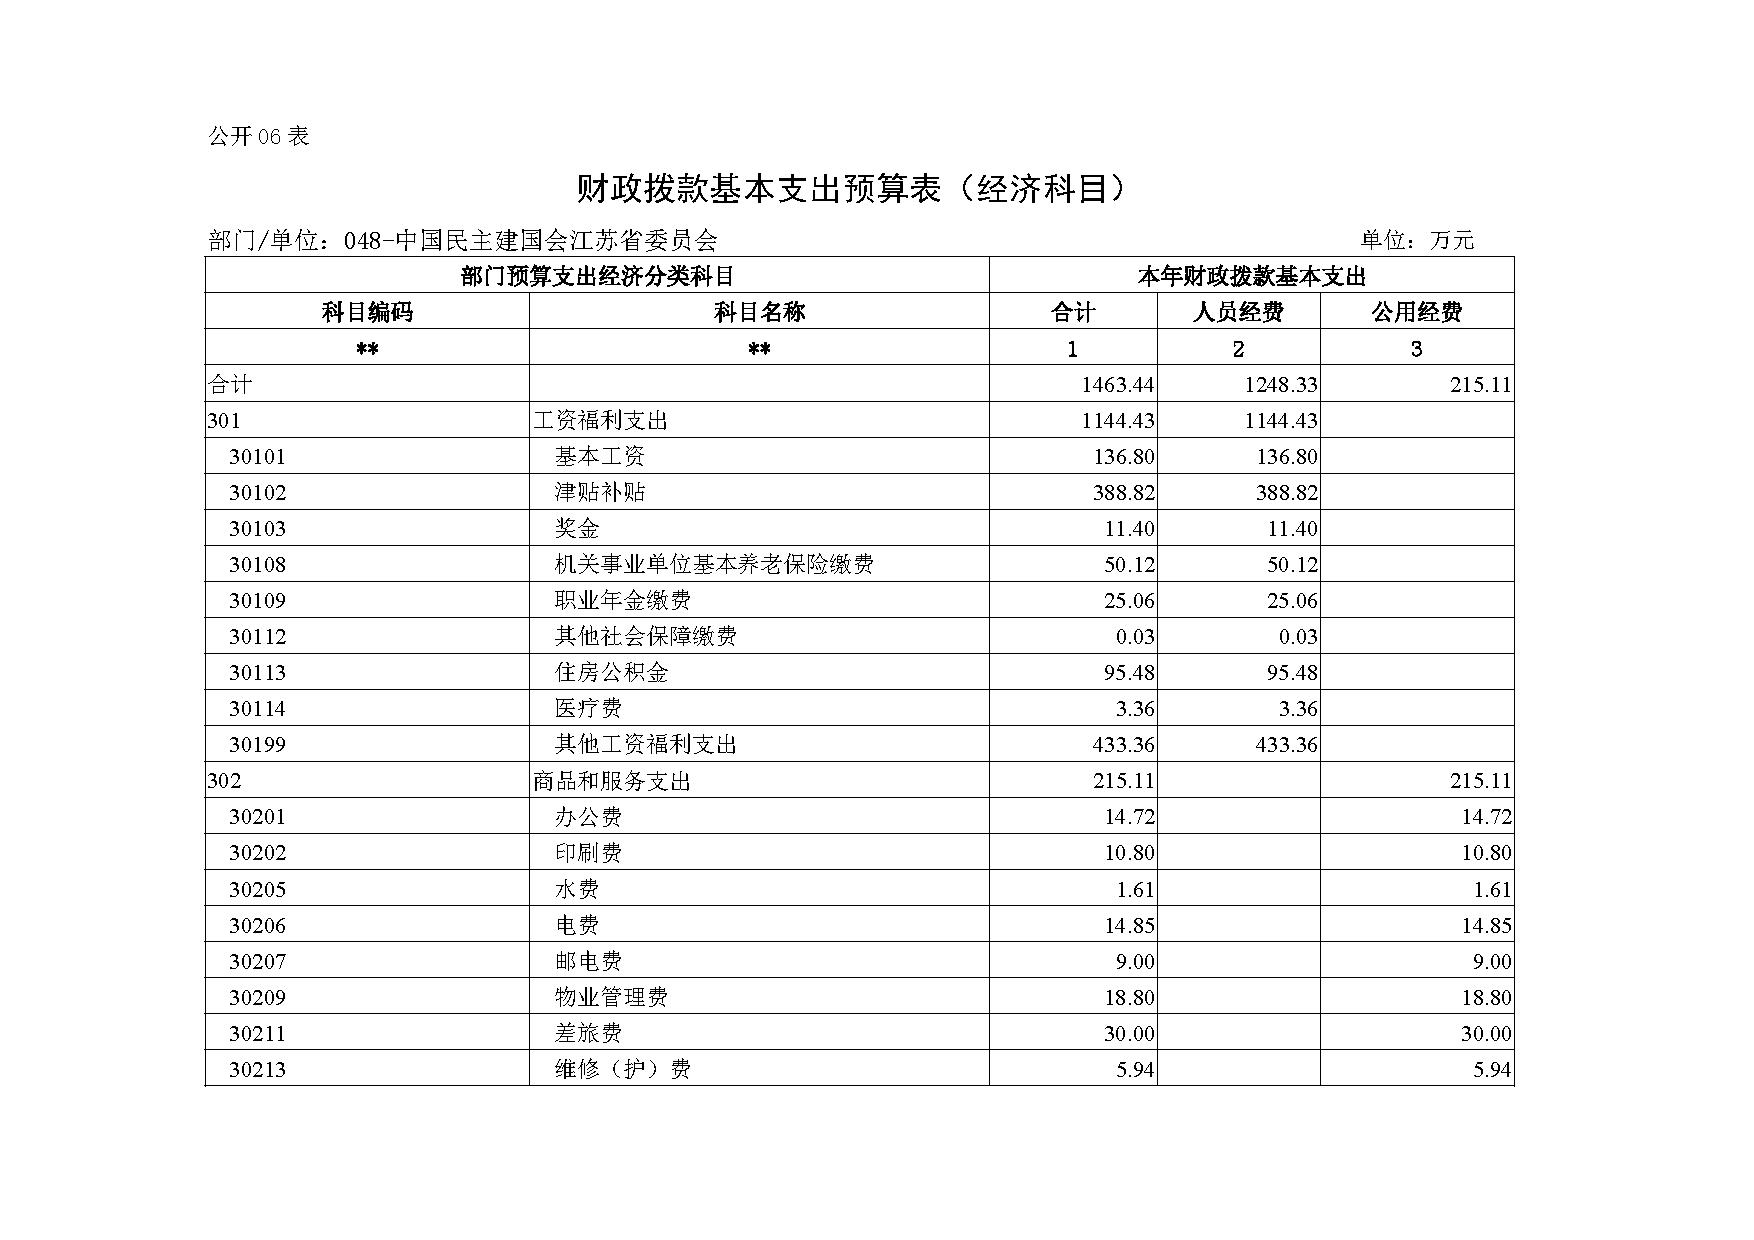 2021年度中国民主建国会江苏省委员会部门预算公开-13.jpg